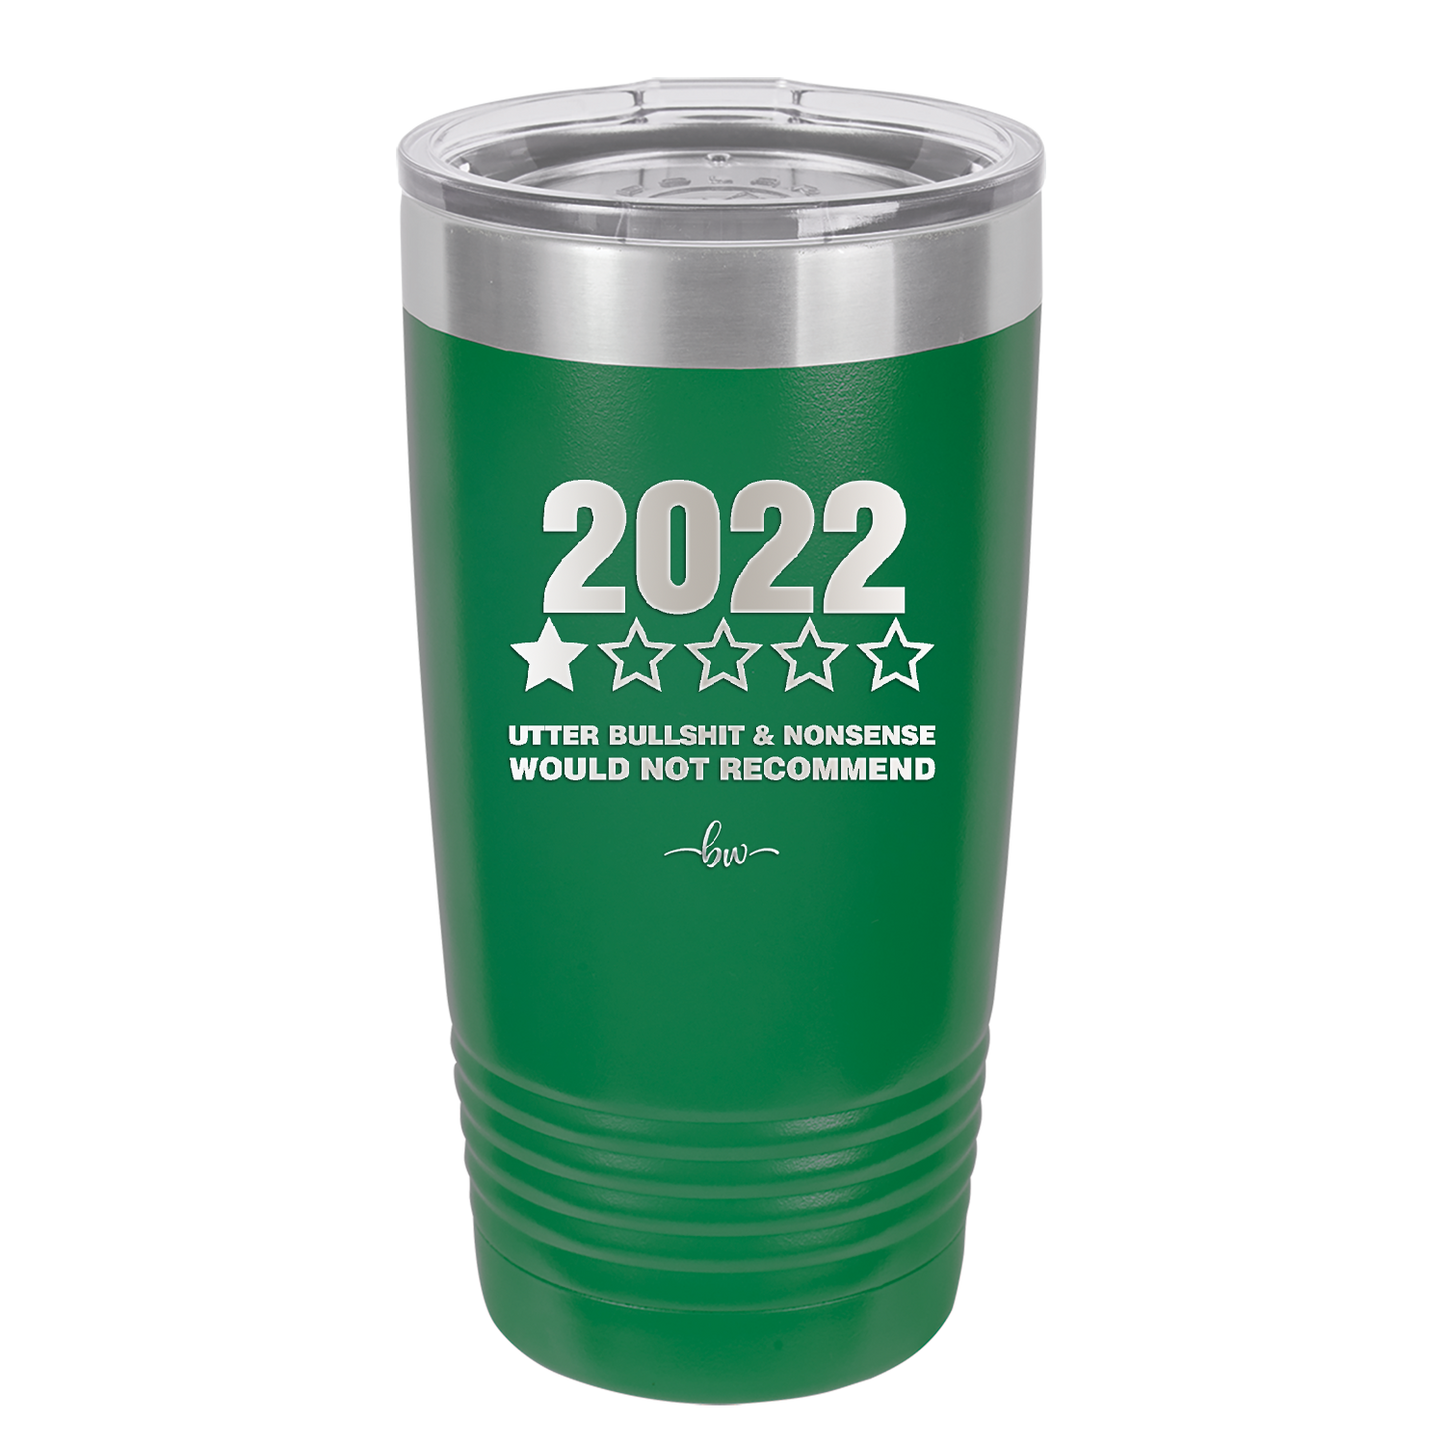 20 oz  2022 utter bullshitt and nonsense would not recommend  - green